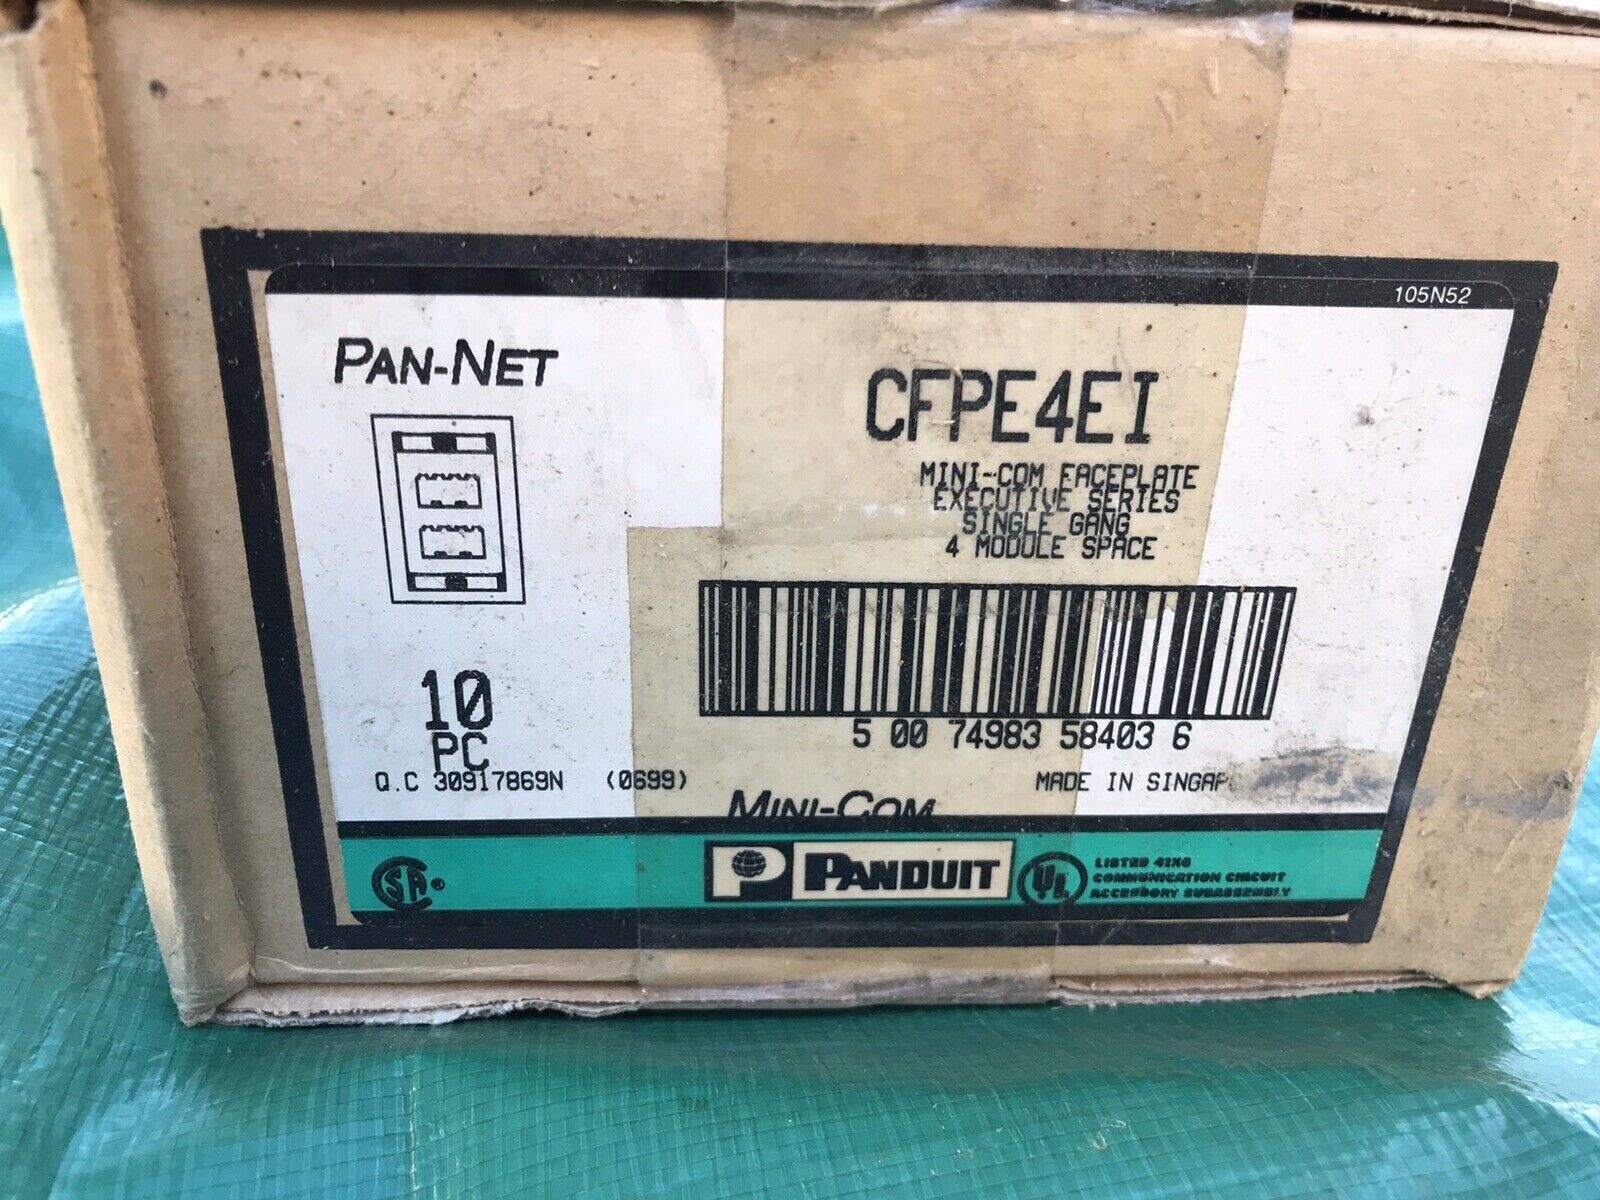 panduit pan-net cfpe4ei box of 18